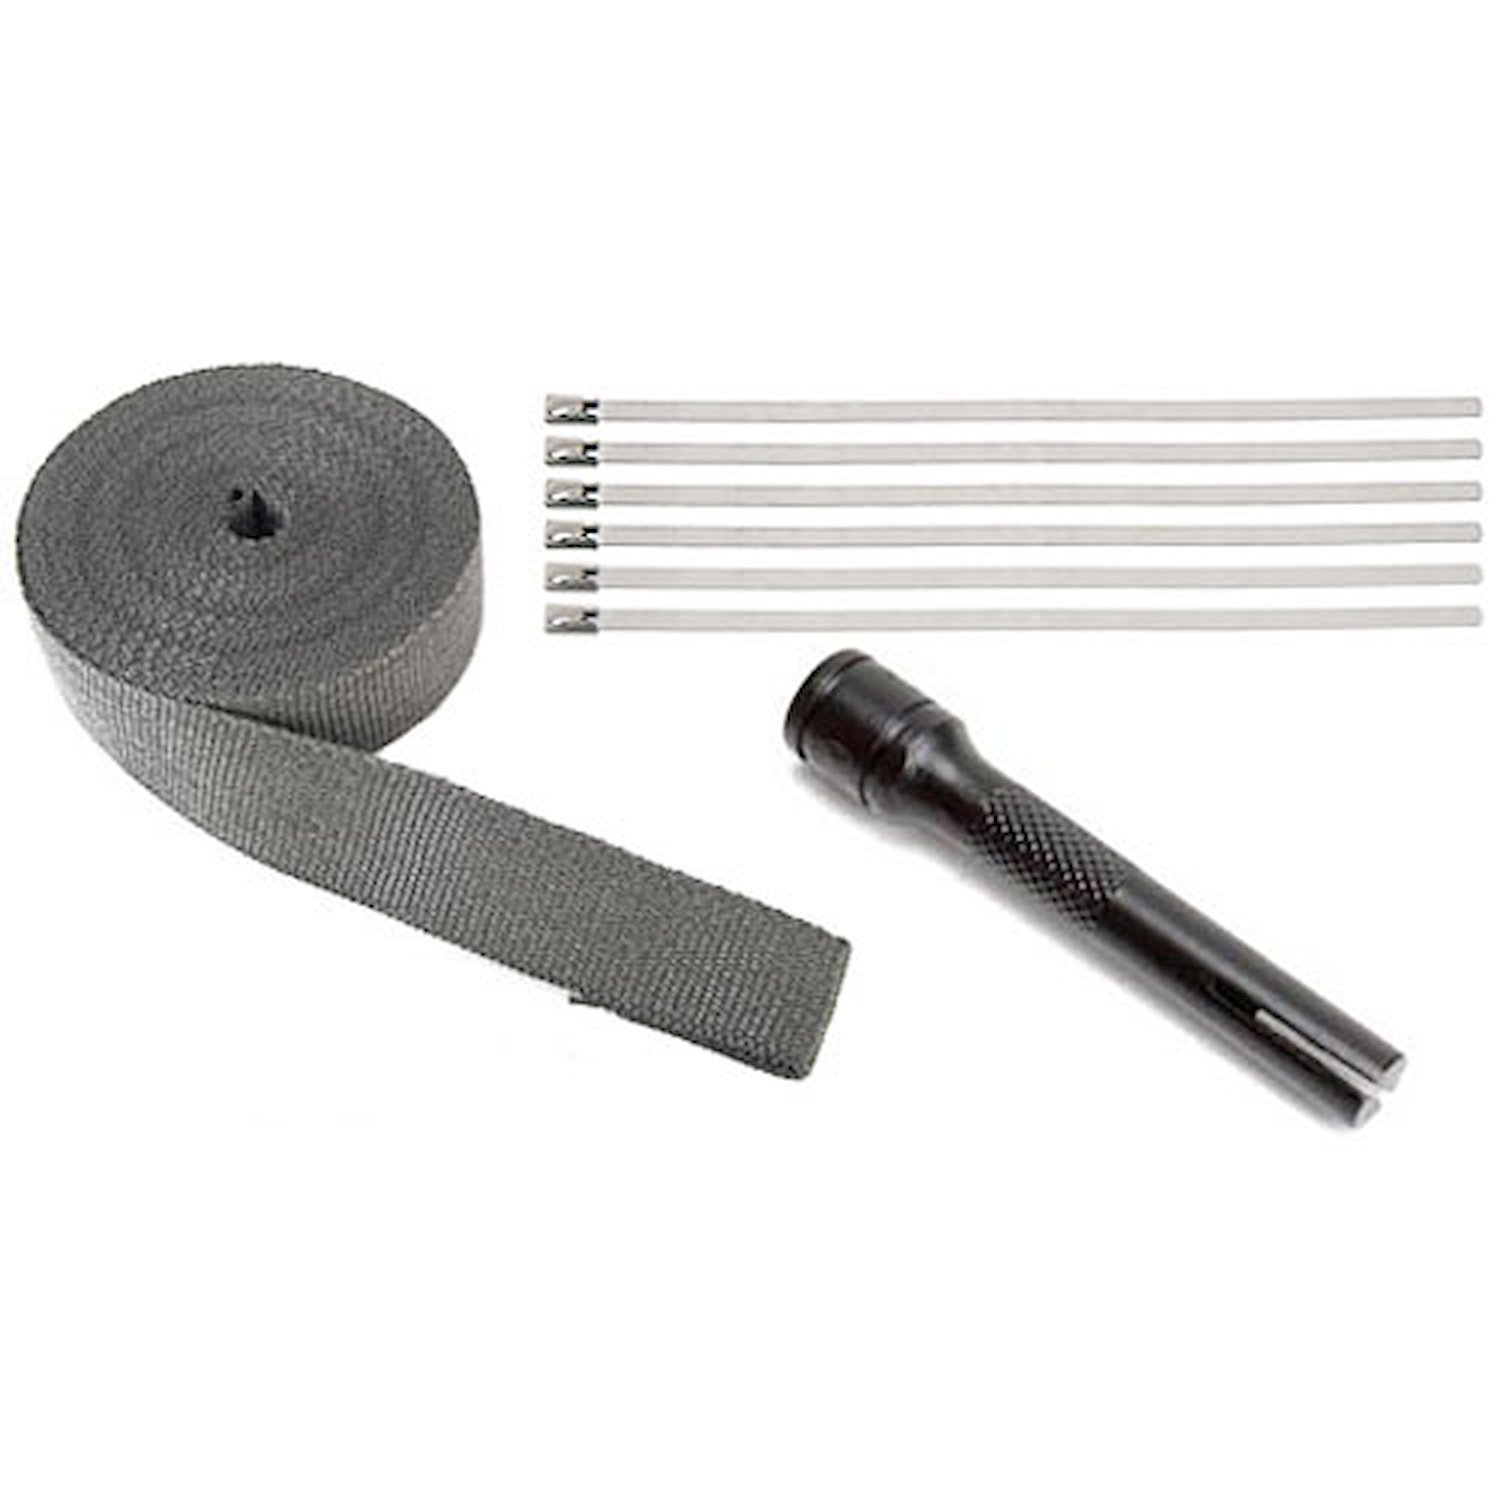 Locking Tie Tool Kit w/Black Wrap Includes: 2" x 50" Black Wrap